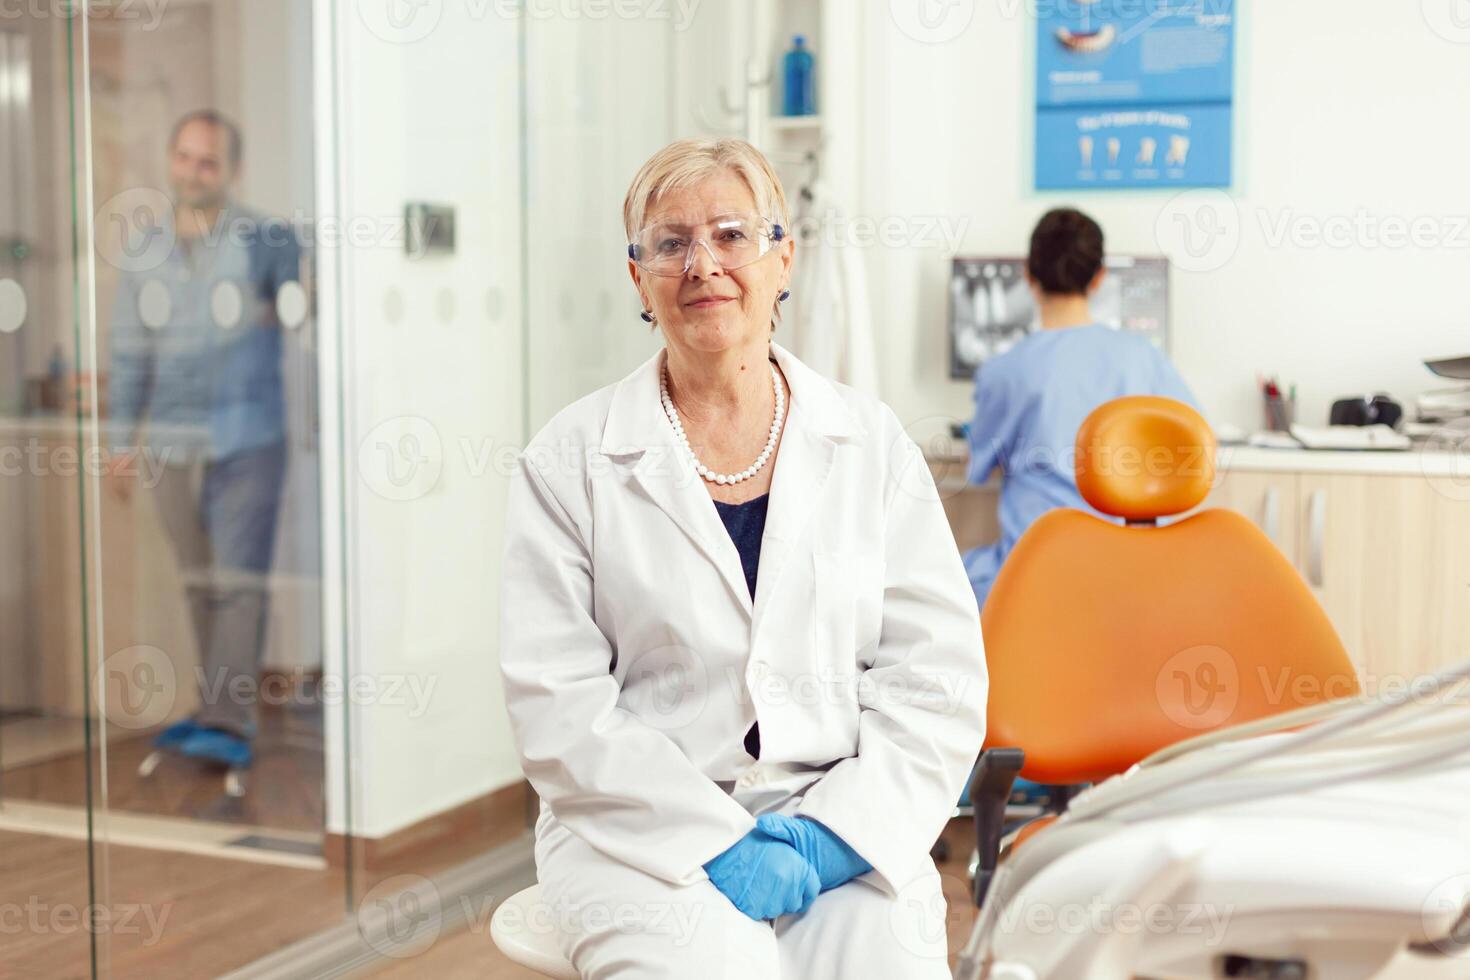 ortodontist senior i medicinsk enhetlig Sammanträde på stol ser in i kamera väntar för man pacient till Start stomatologi behandling efter tand kirurgi. team av tandläkare arbetssätt i skåp kontor foto